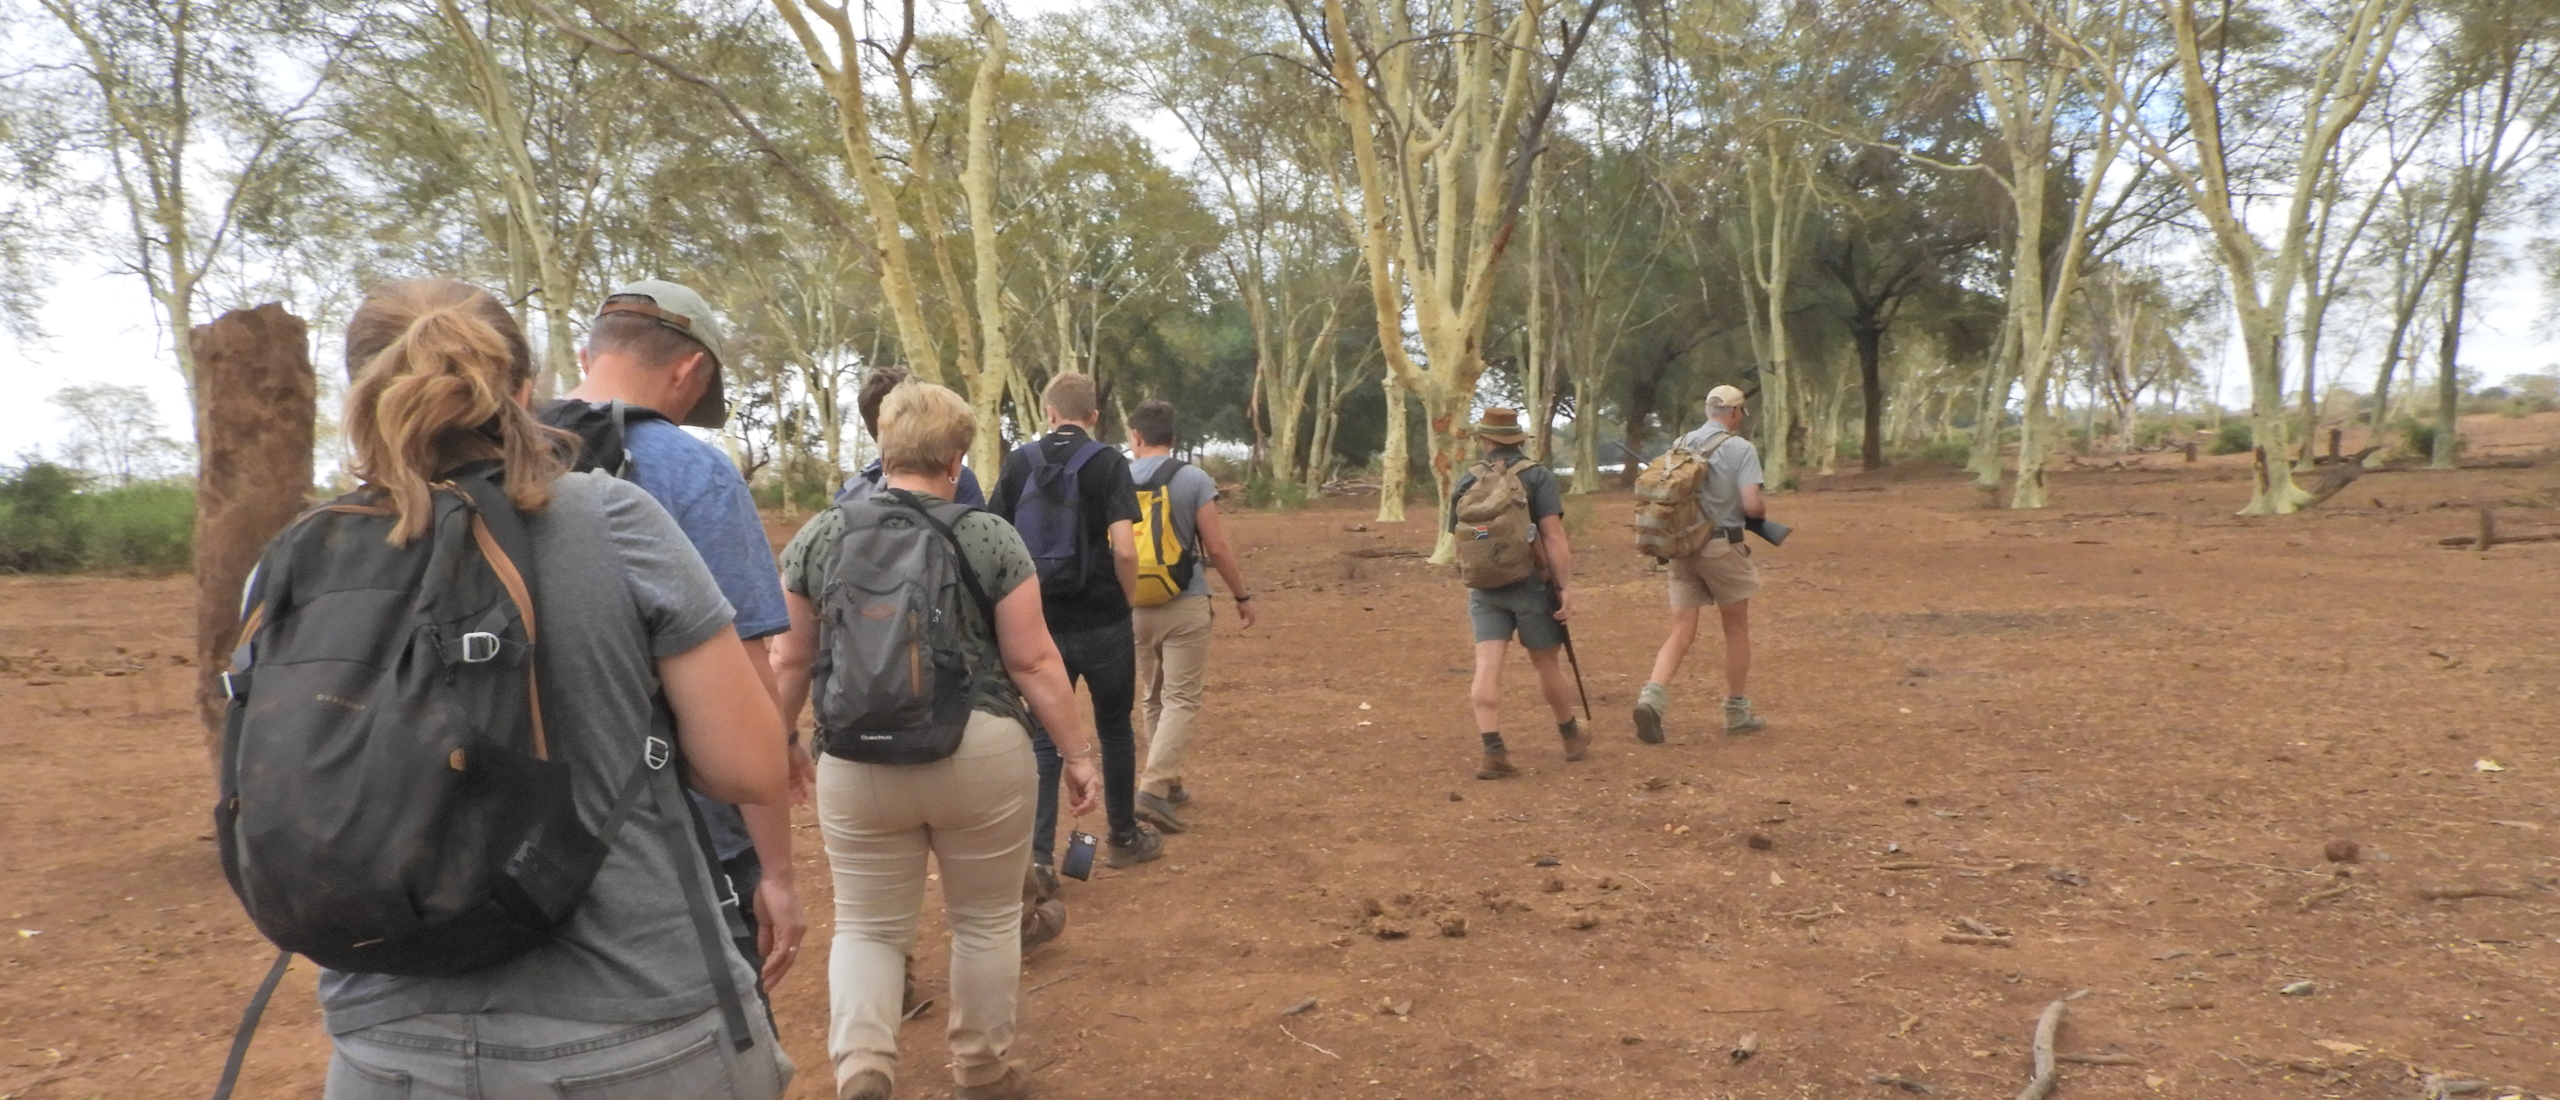 Makuleke concessie in Kruger in zeer goede staat voor wandelsafari's